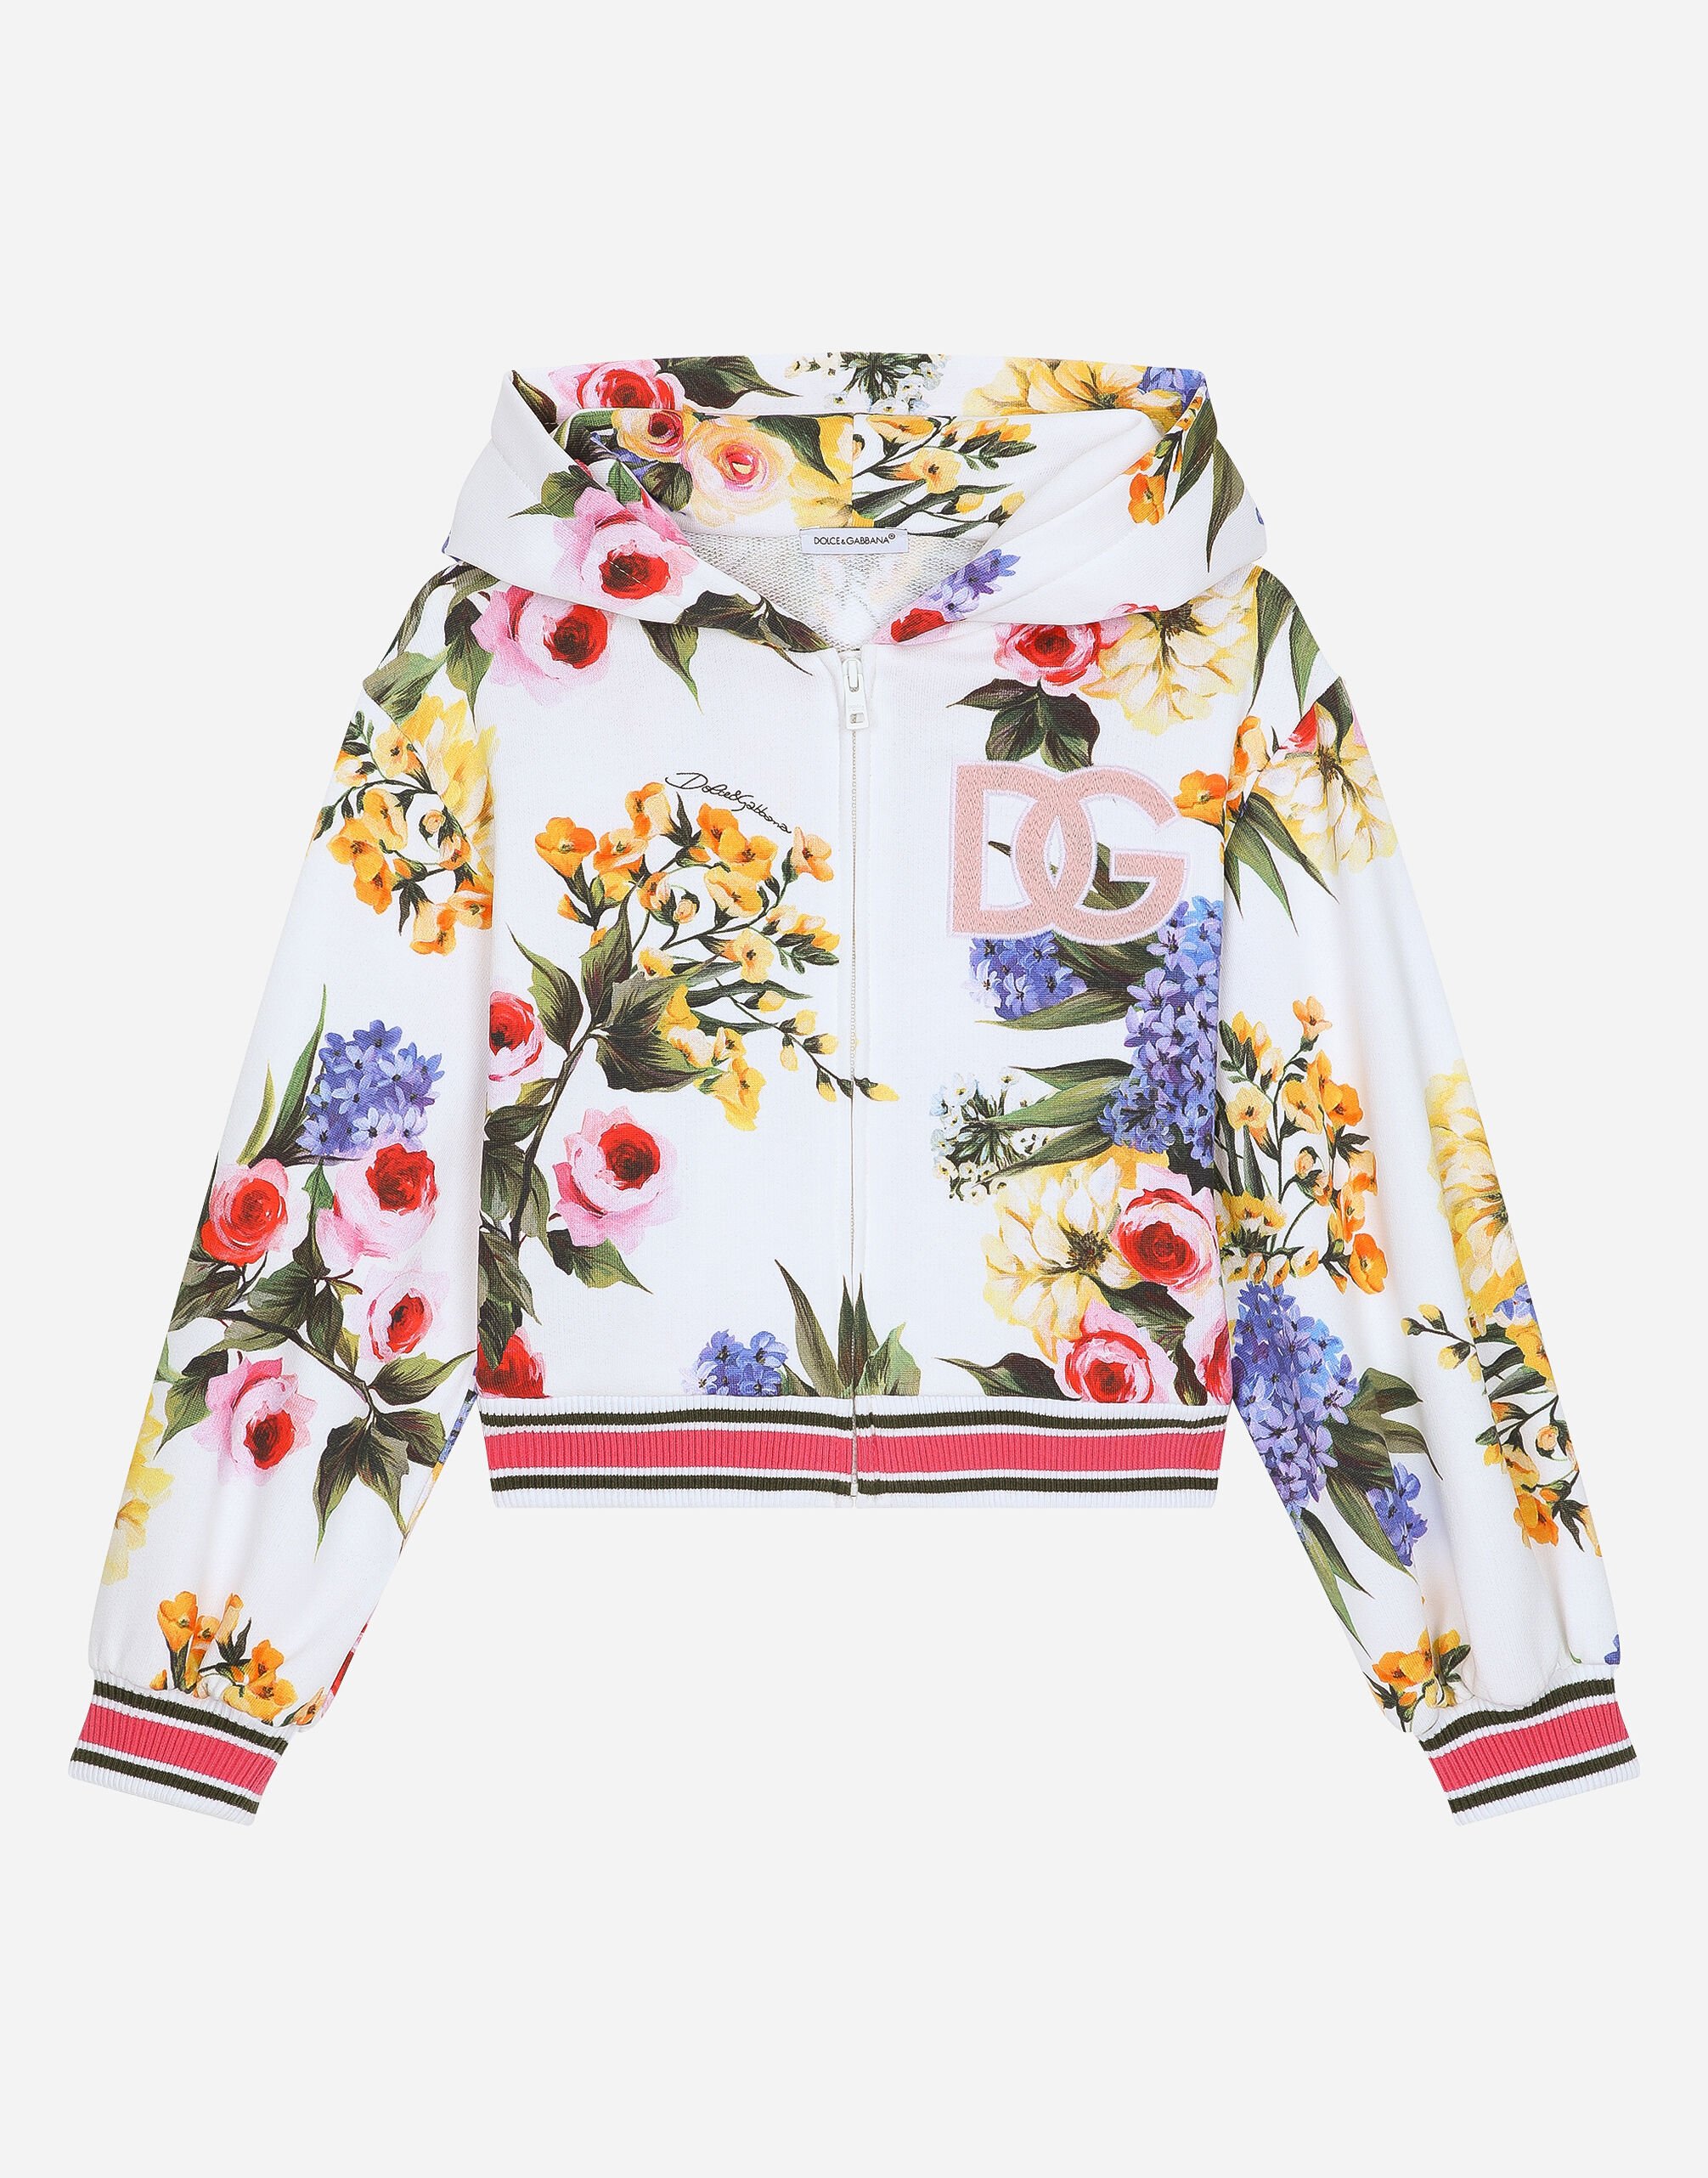 Dolce & Gabbana Felpa zip con cappuccio in jersey stampa giardino e logo DG Stampa L5JTMEG7K4F